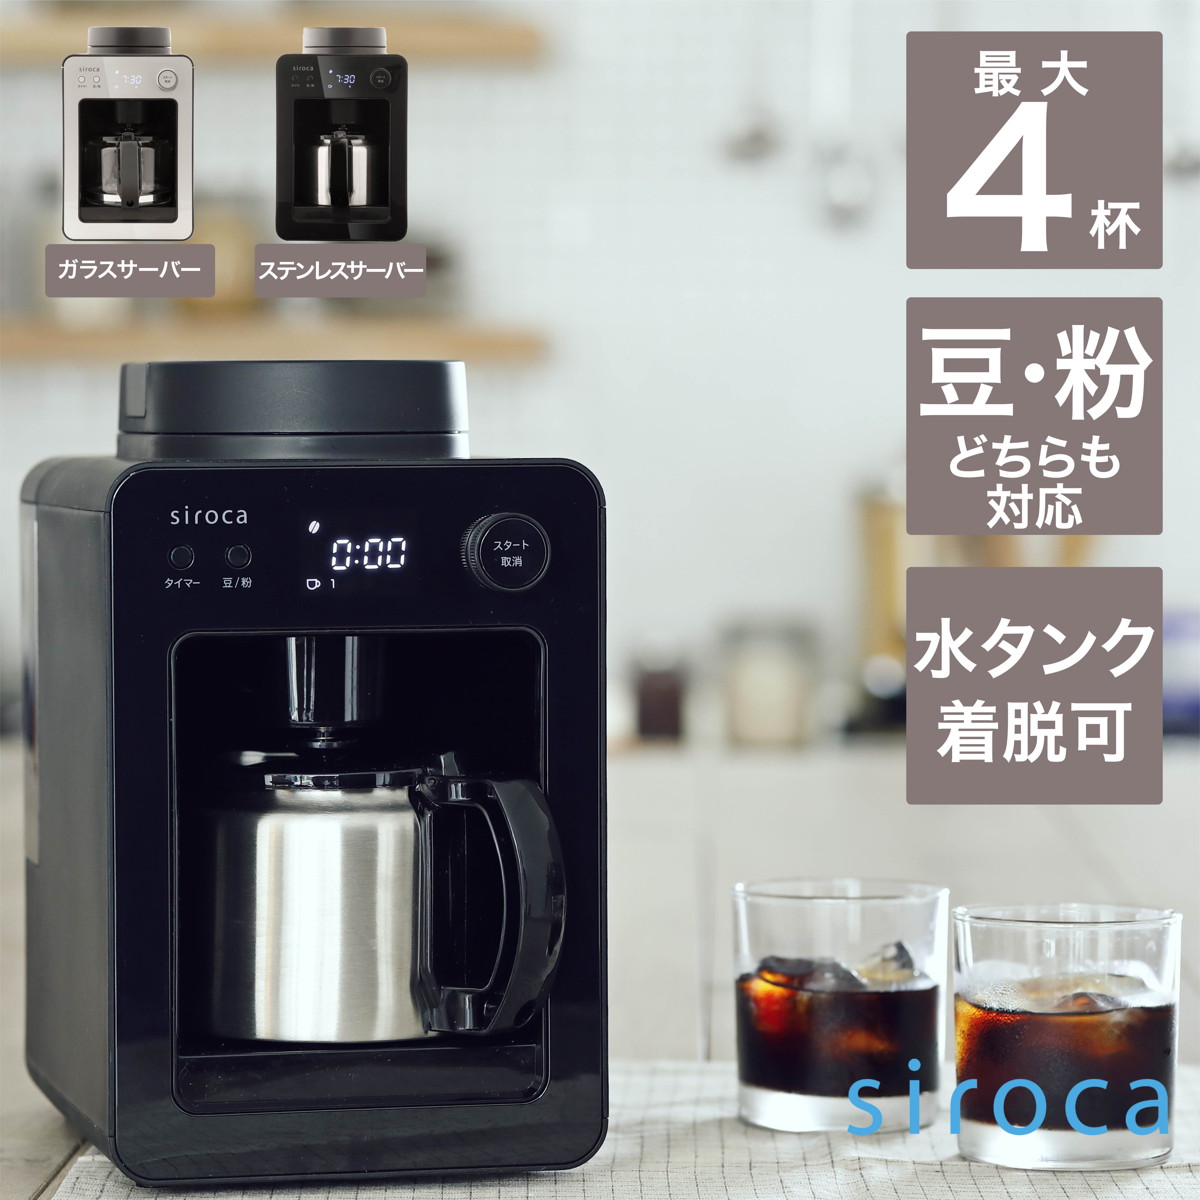 siroca 全自動コーヒーメーカー カフェばこ ステンレスサーバー 静音 ミル4段階 コンパクト 豆・粉両対応 蒸らし タイマー機能 ブラック